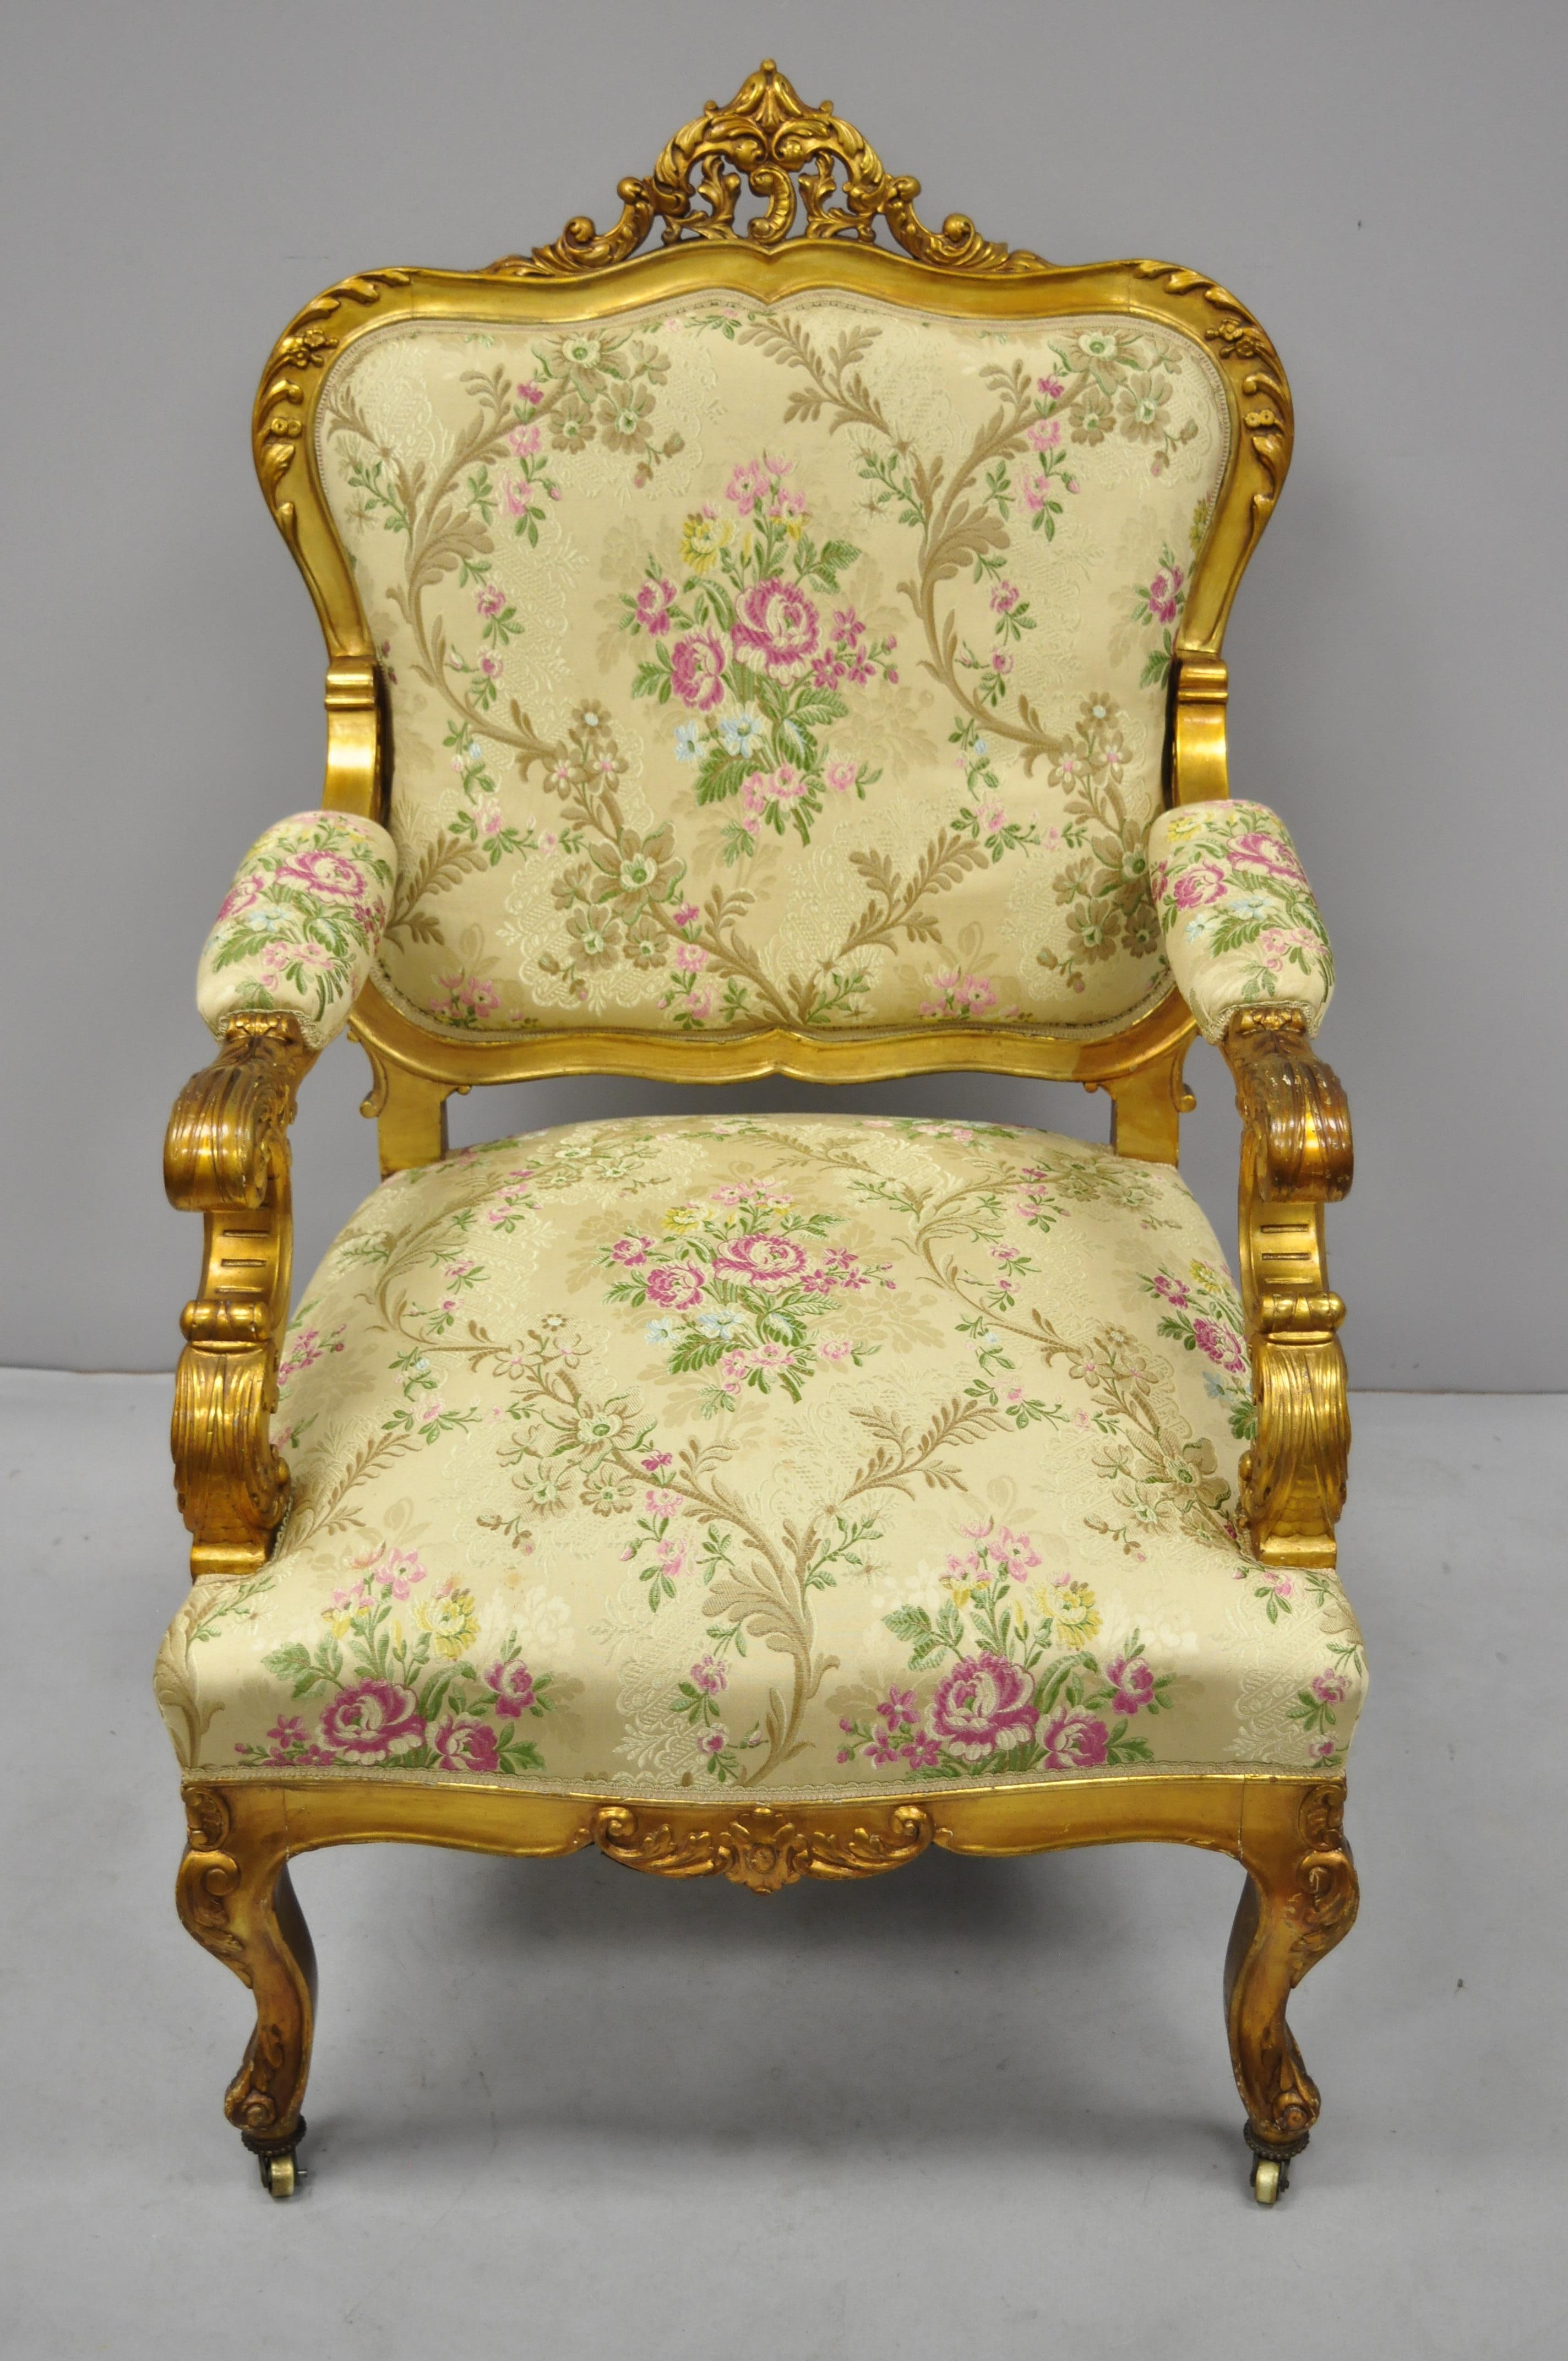 1920er Jahre Französisch Louis XV Rokoko-Stil Gold vergoldet Wohnzimmer Sessel. Artikel verfügt über Messing Rollen, distressed Gold-Finish, Gold-Stoff mit rosa Blumen, Massivholz-Konstruktion, gepolsterte Armlehnen, schön geschnitzte Details,